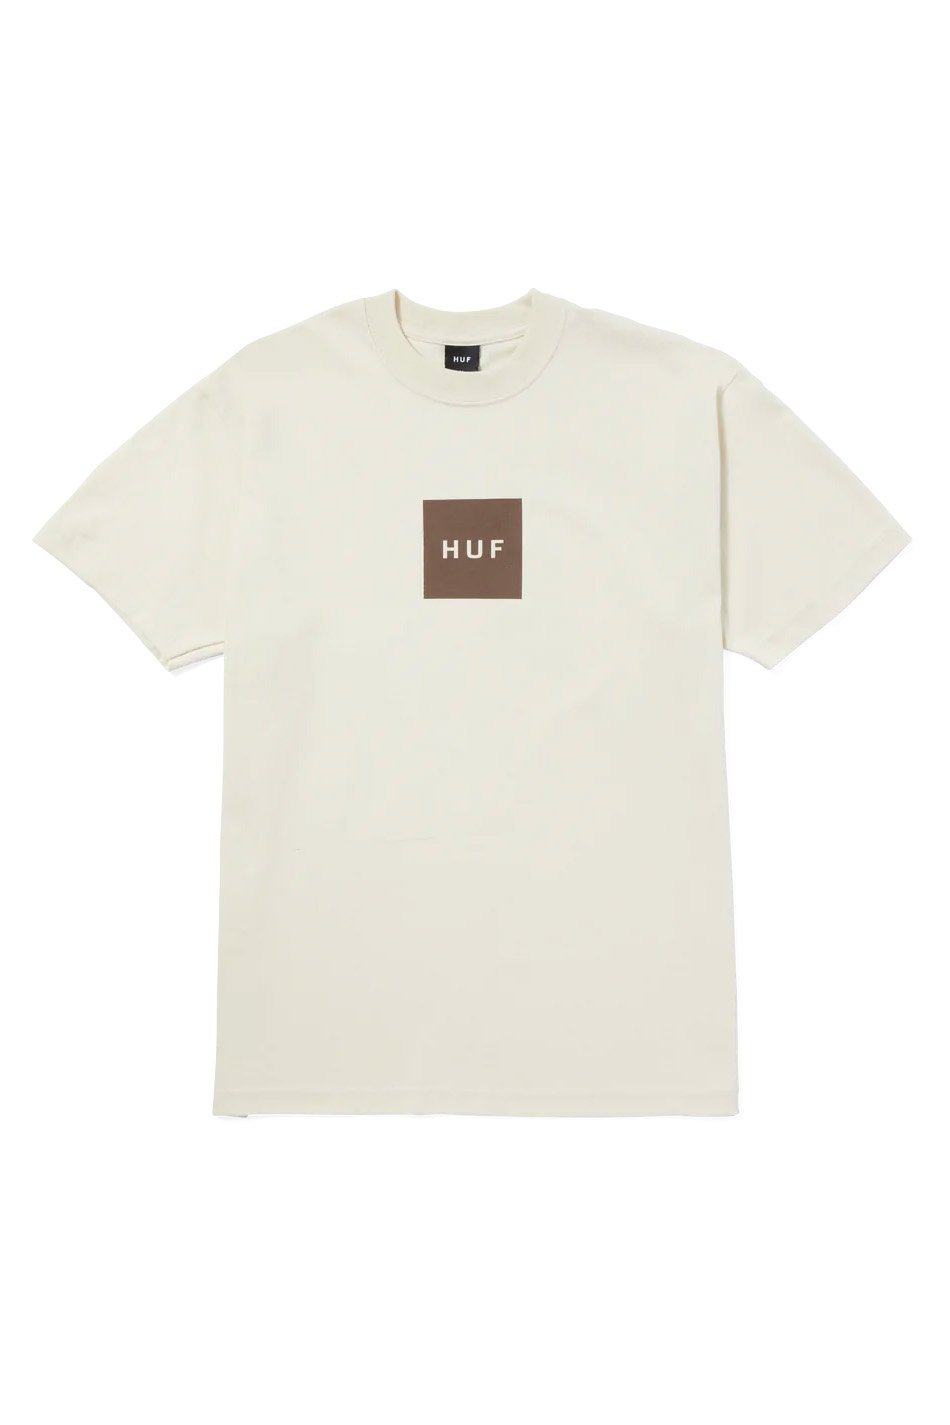 Huf Set Box T-Shirt in Knochenweiß